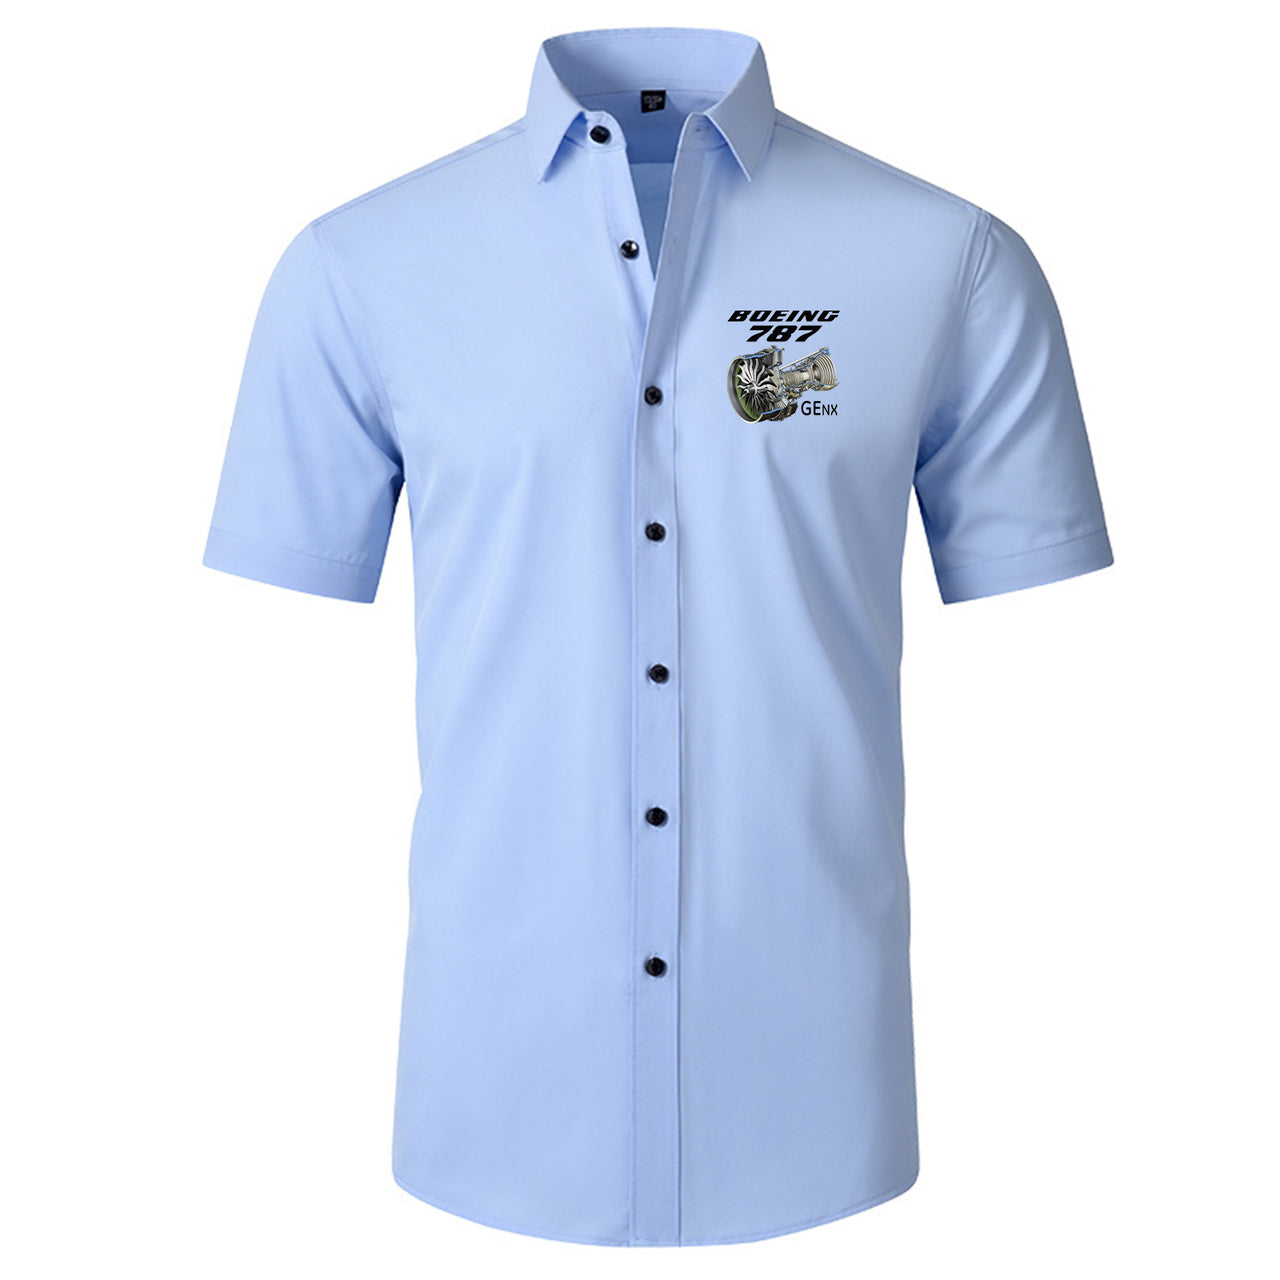 Boeing 787 & GENX Engine Designed Short Sleeve Shirts